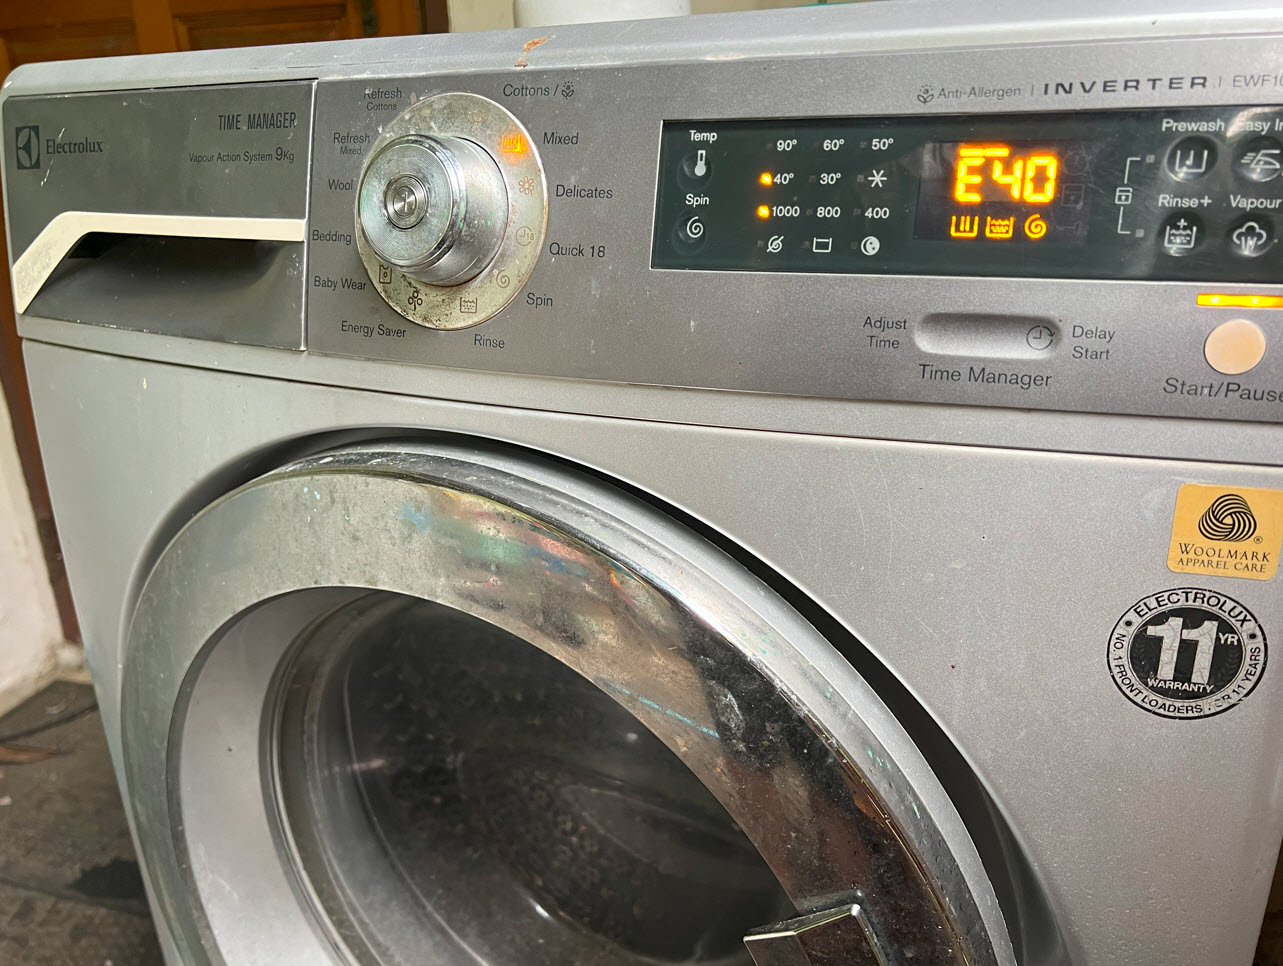 เครื่องซักผ้า Electrolux ขึ้น Error Code E40 E10 E20